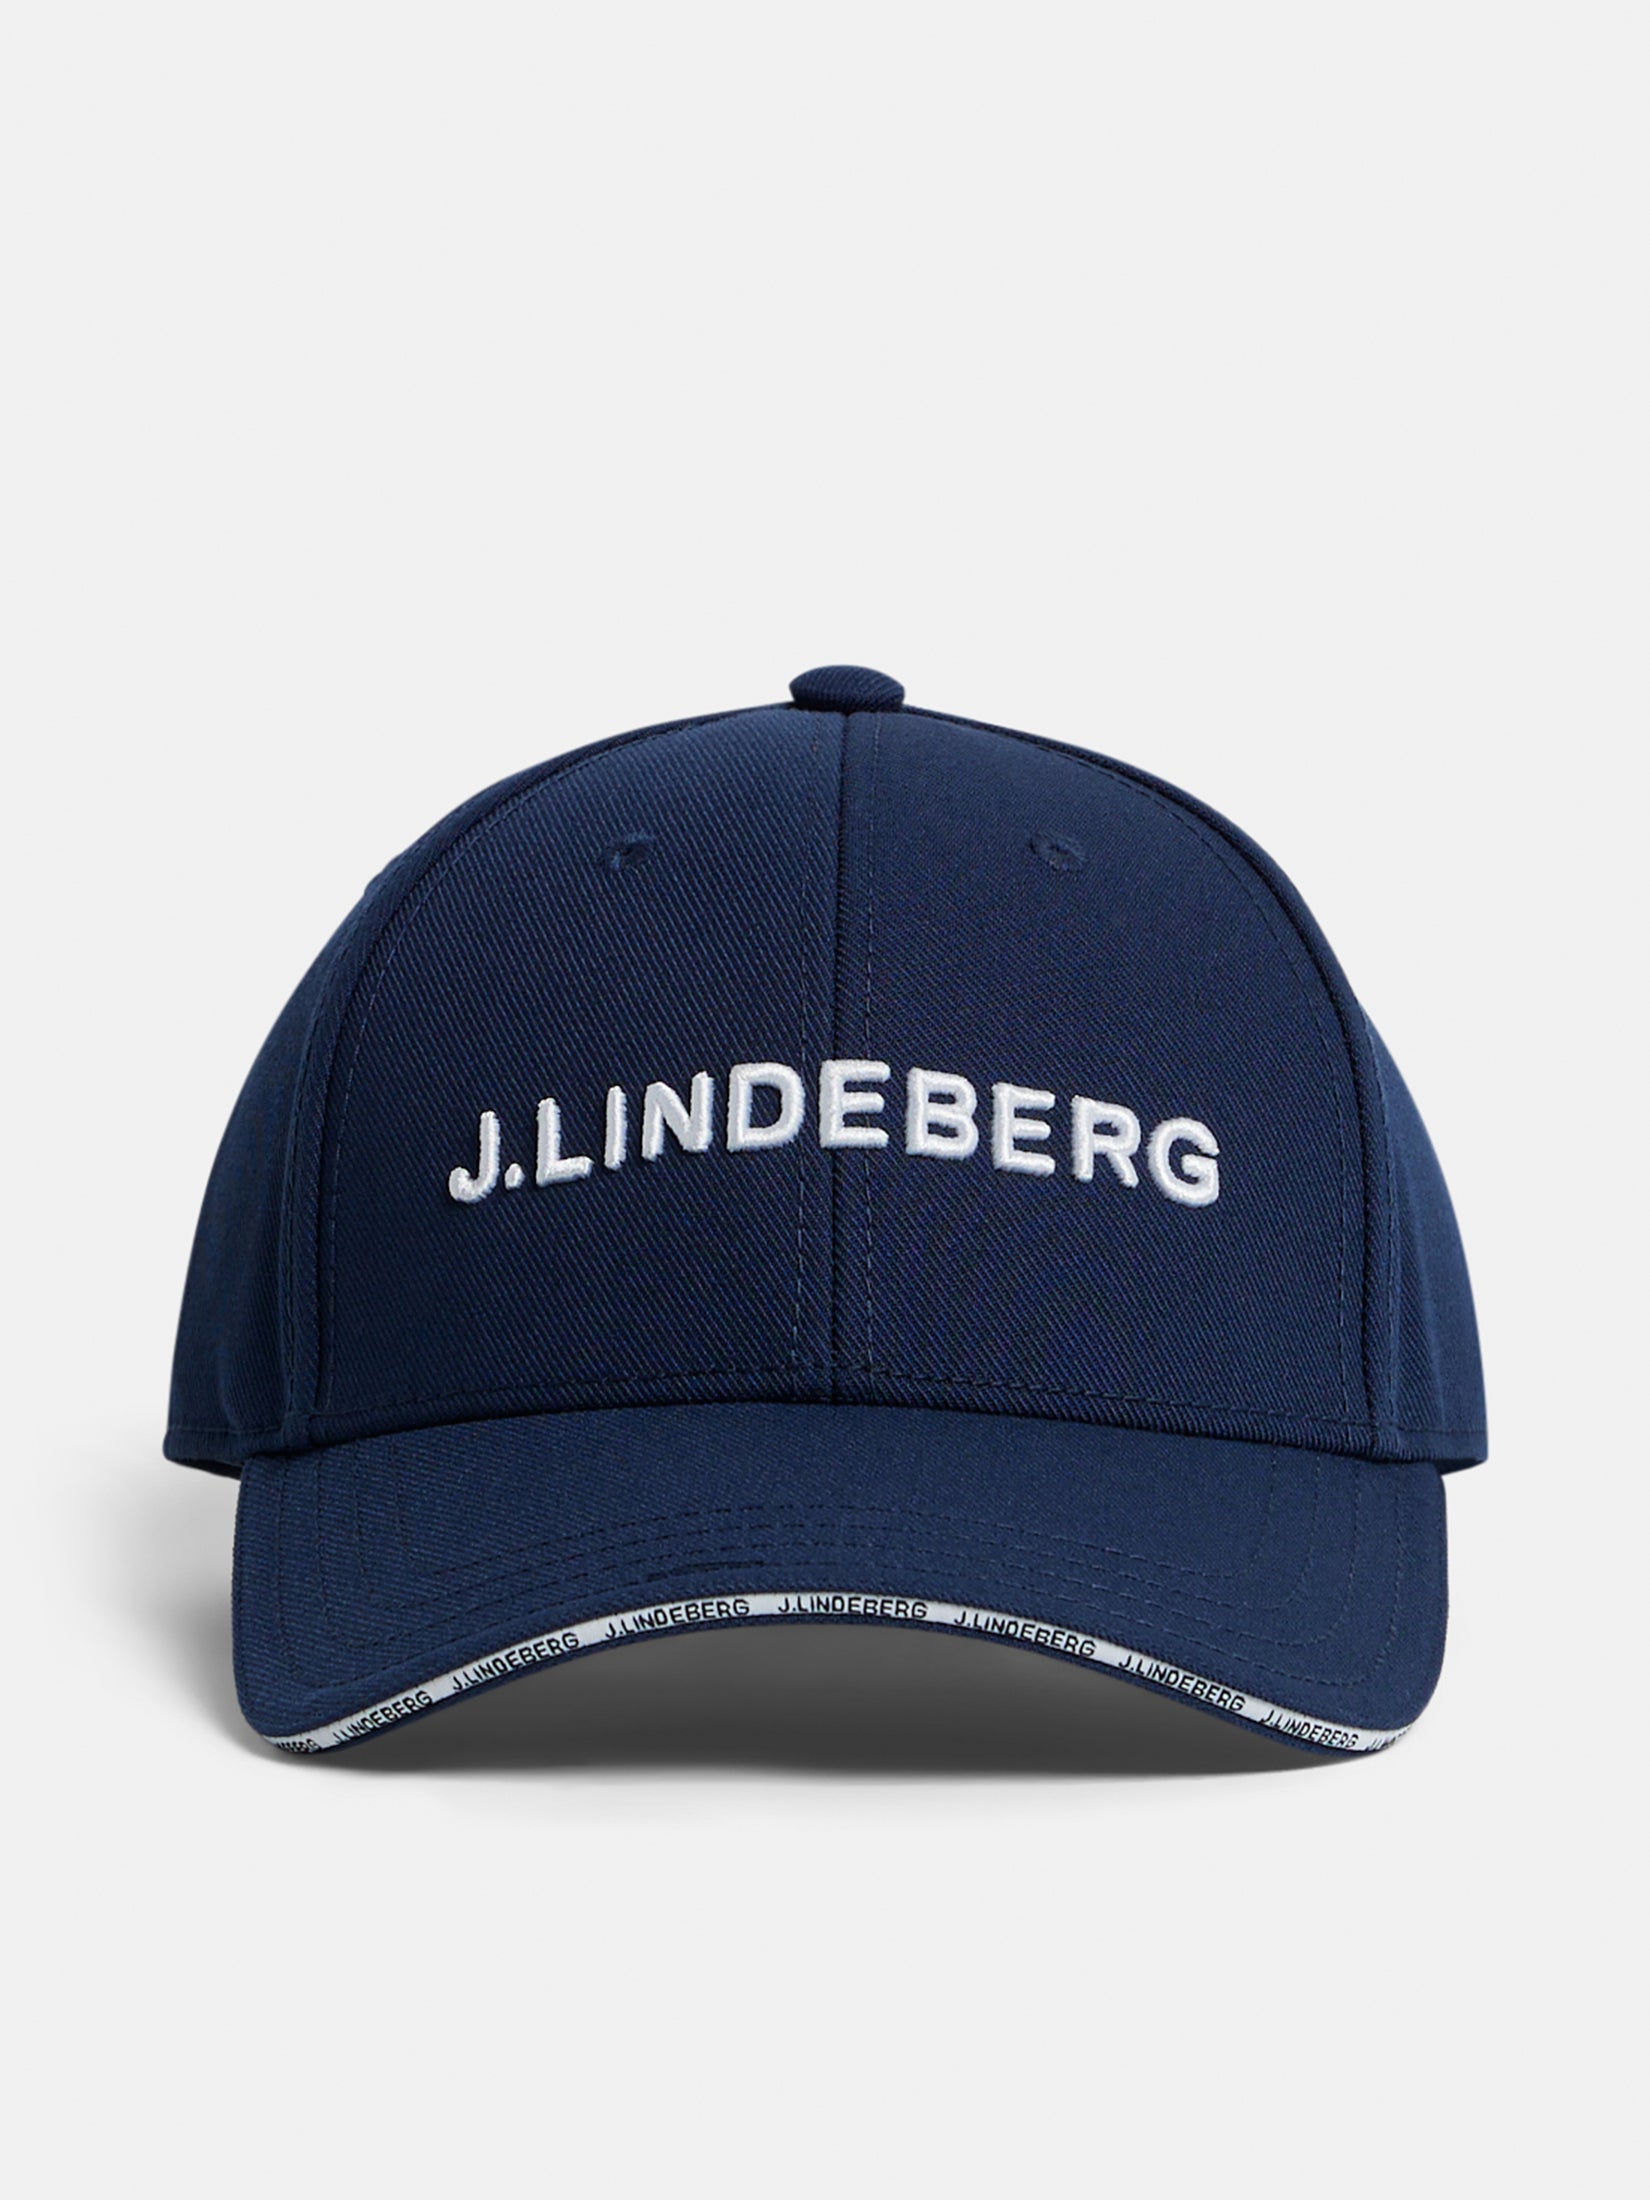 Mens golf caps – J.Lindeberg